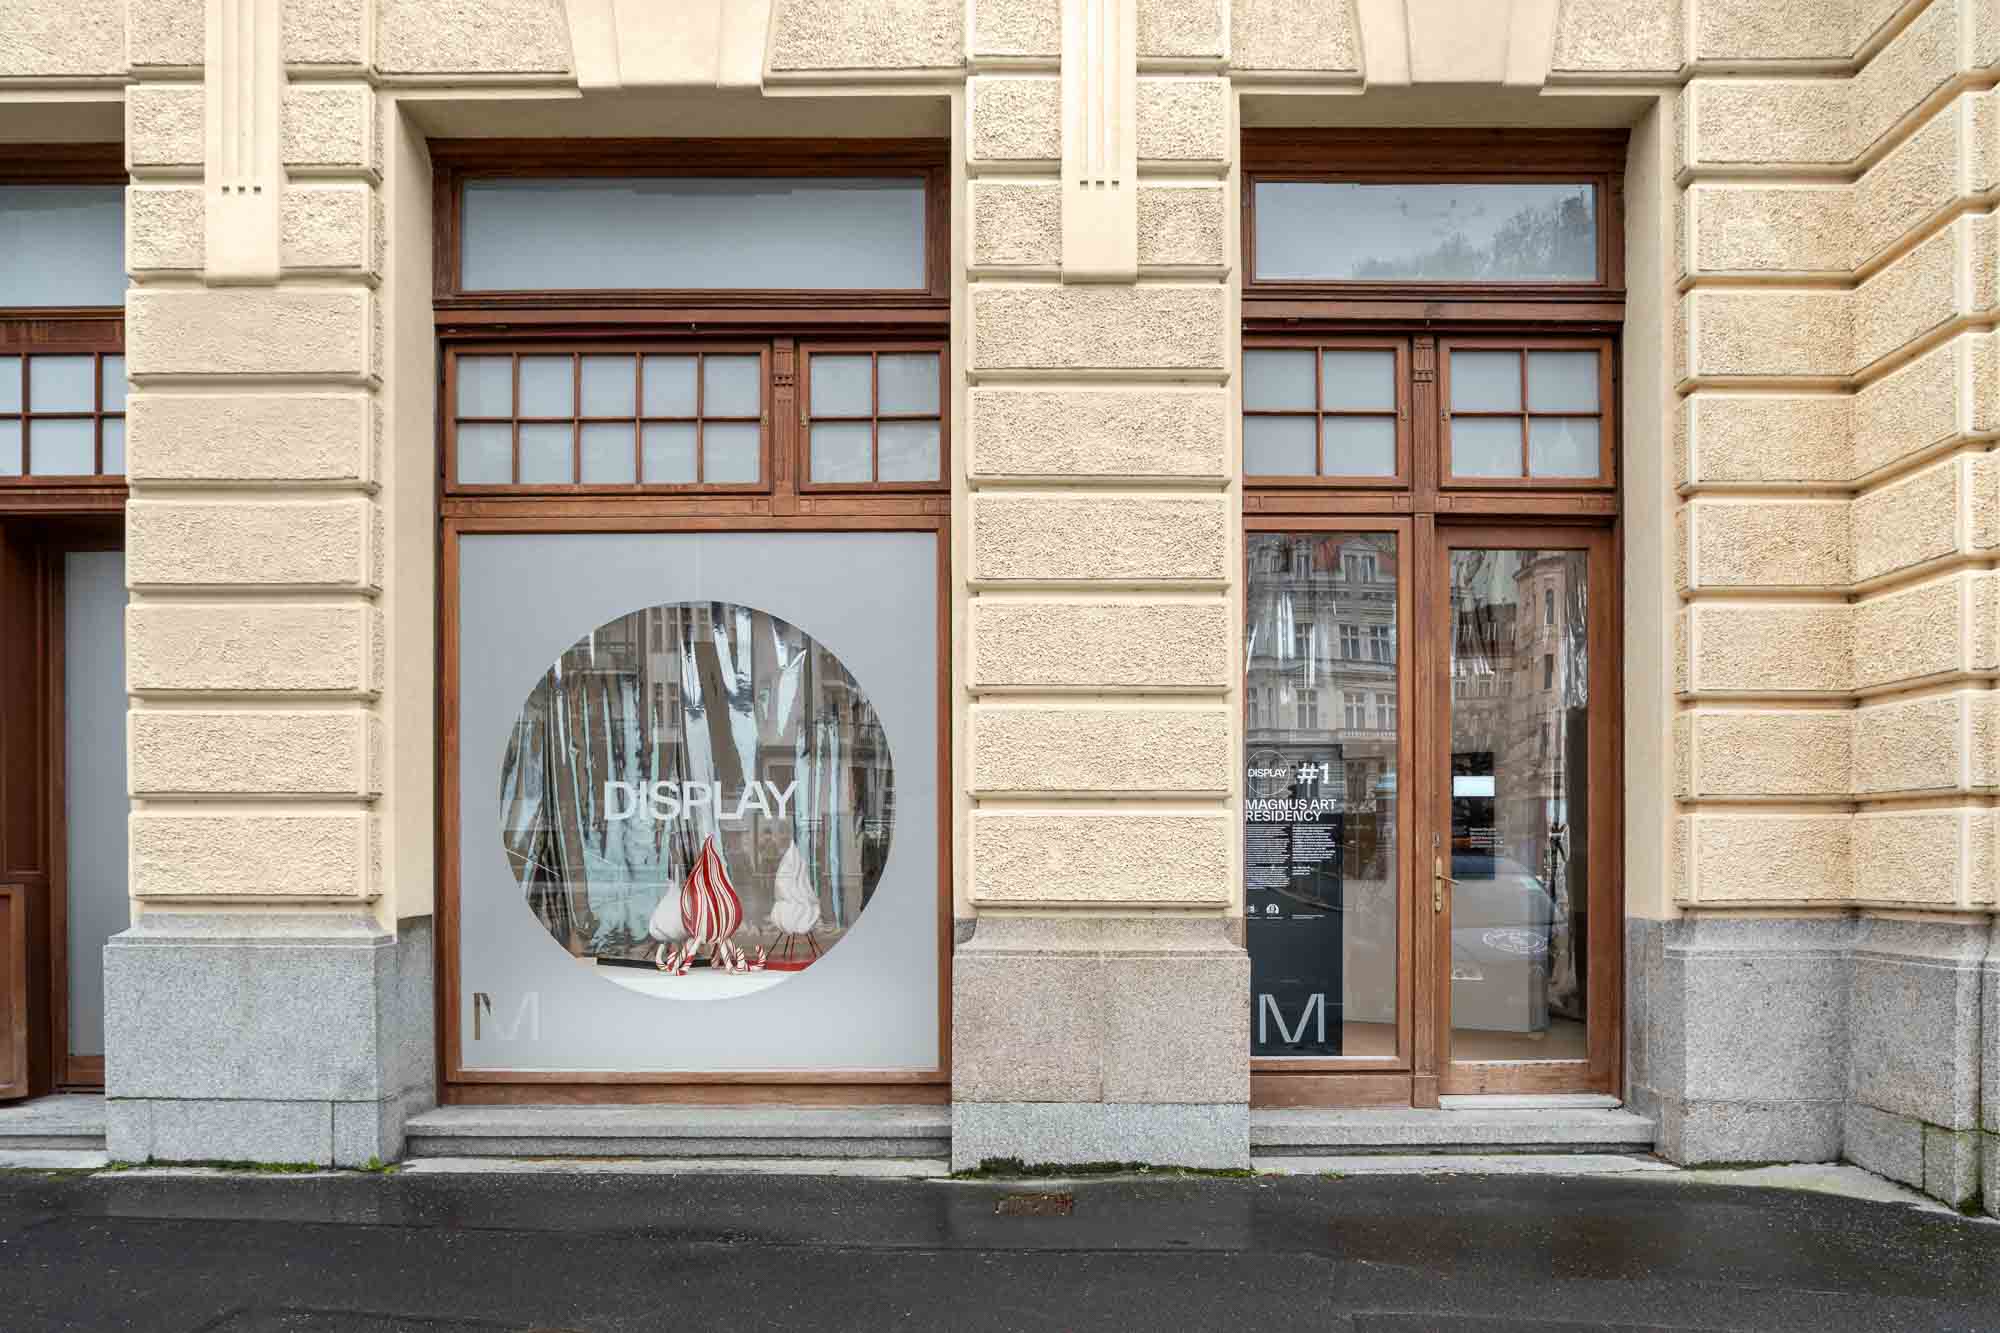 Série rozhovorů u příležitosti otevření galerie Display v Karlových Varech